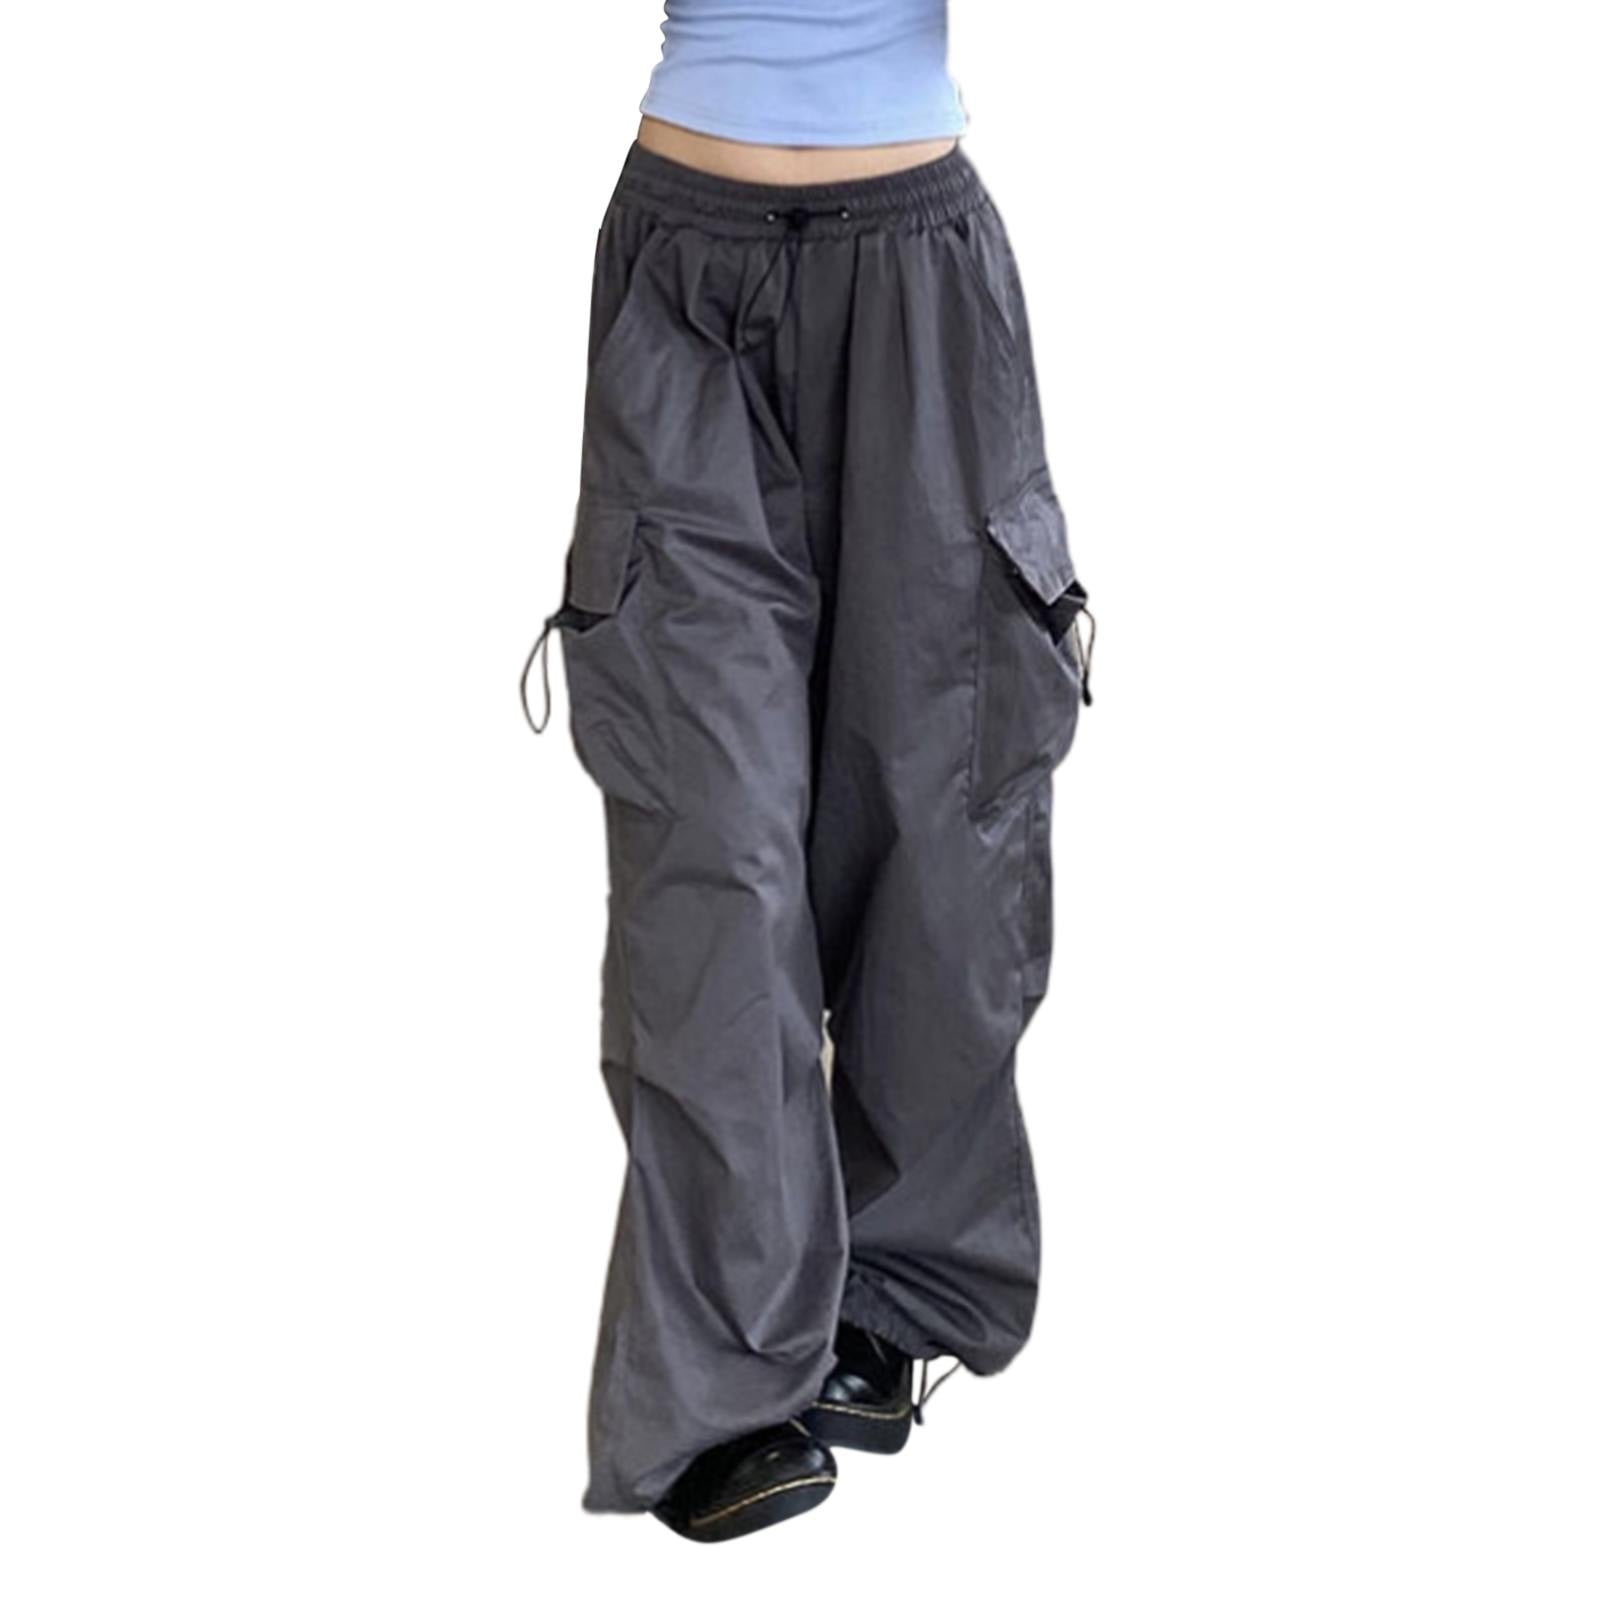 Tailored Wide Leg Pants For Women Baggy Cargo Streetwear Hop